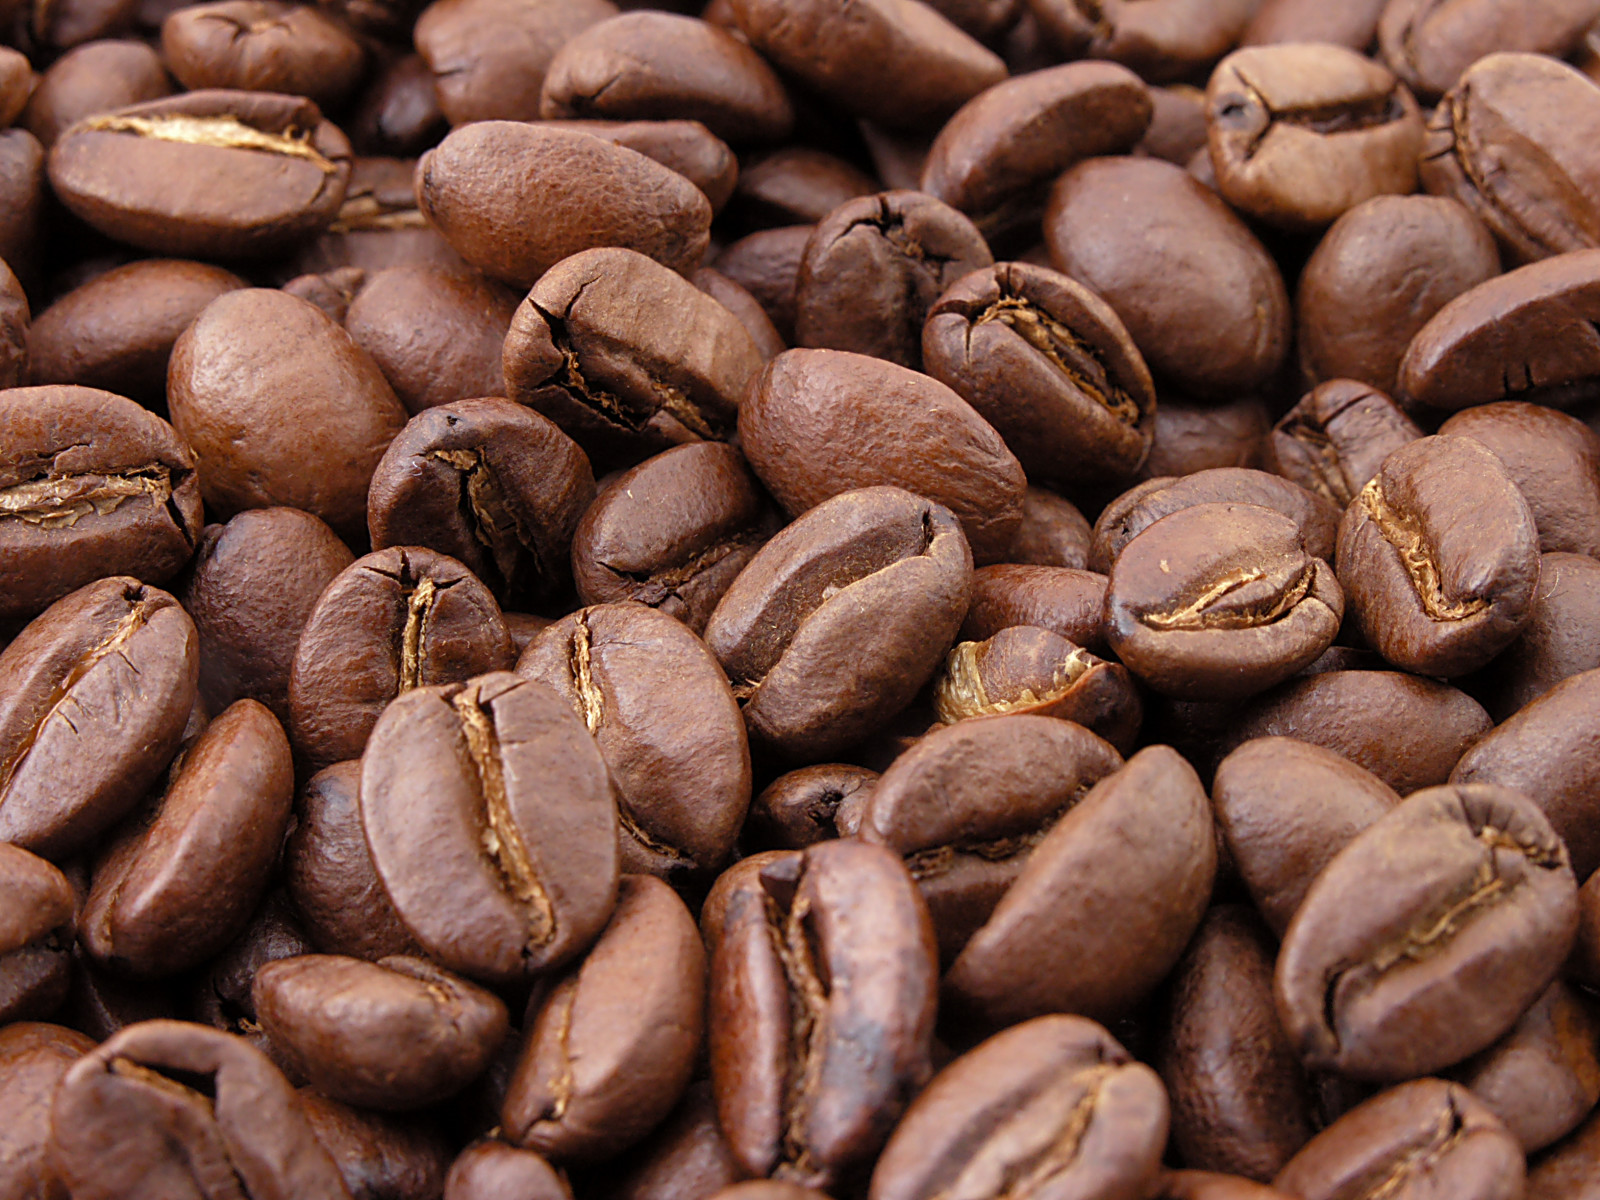 Tipps zur Reinigung vollautomatischer Kaffeemaschinen